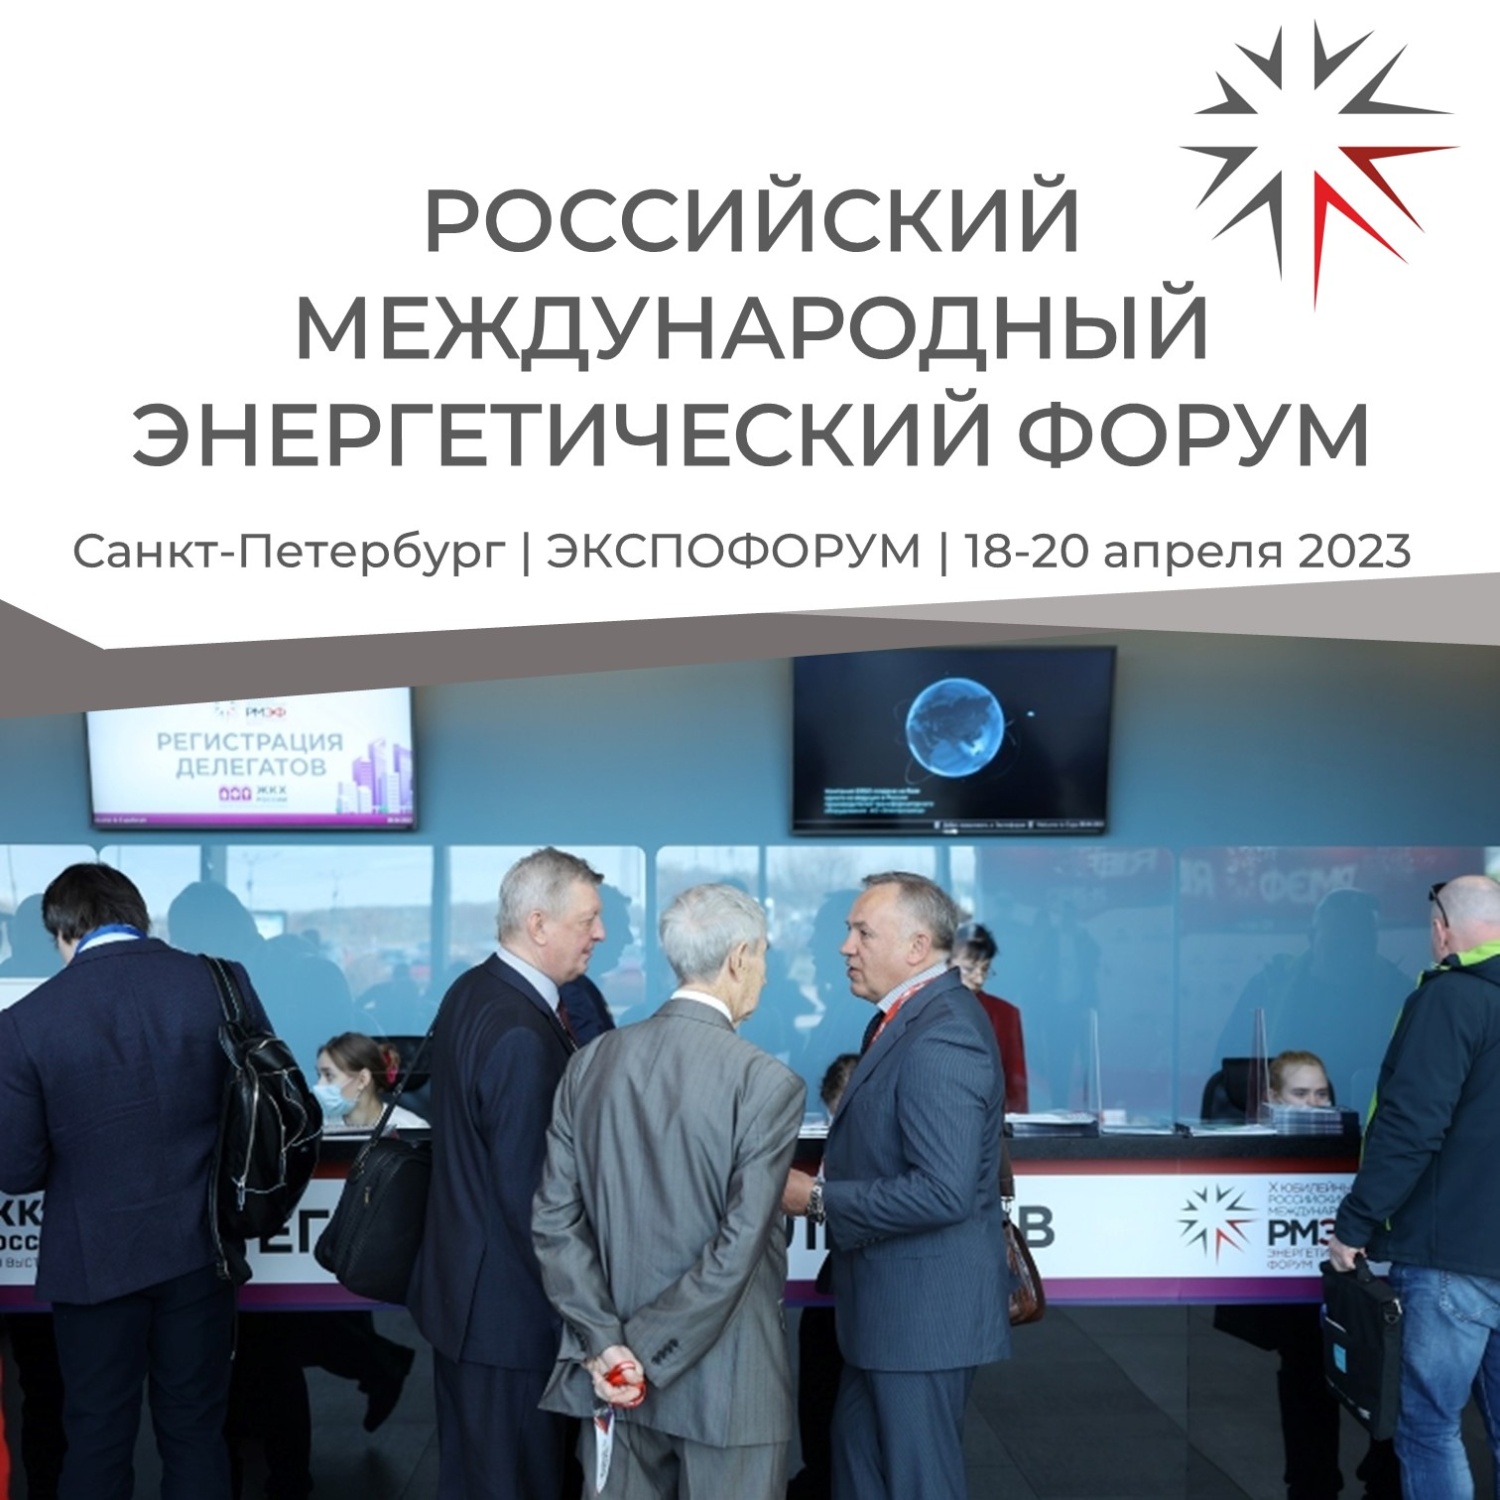 Пензенские предприятия могут принять участие в XI Российском международном энергетическом форуме